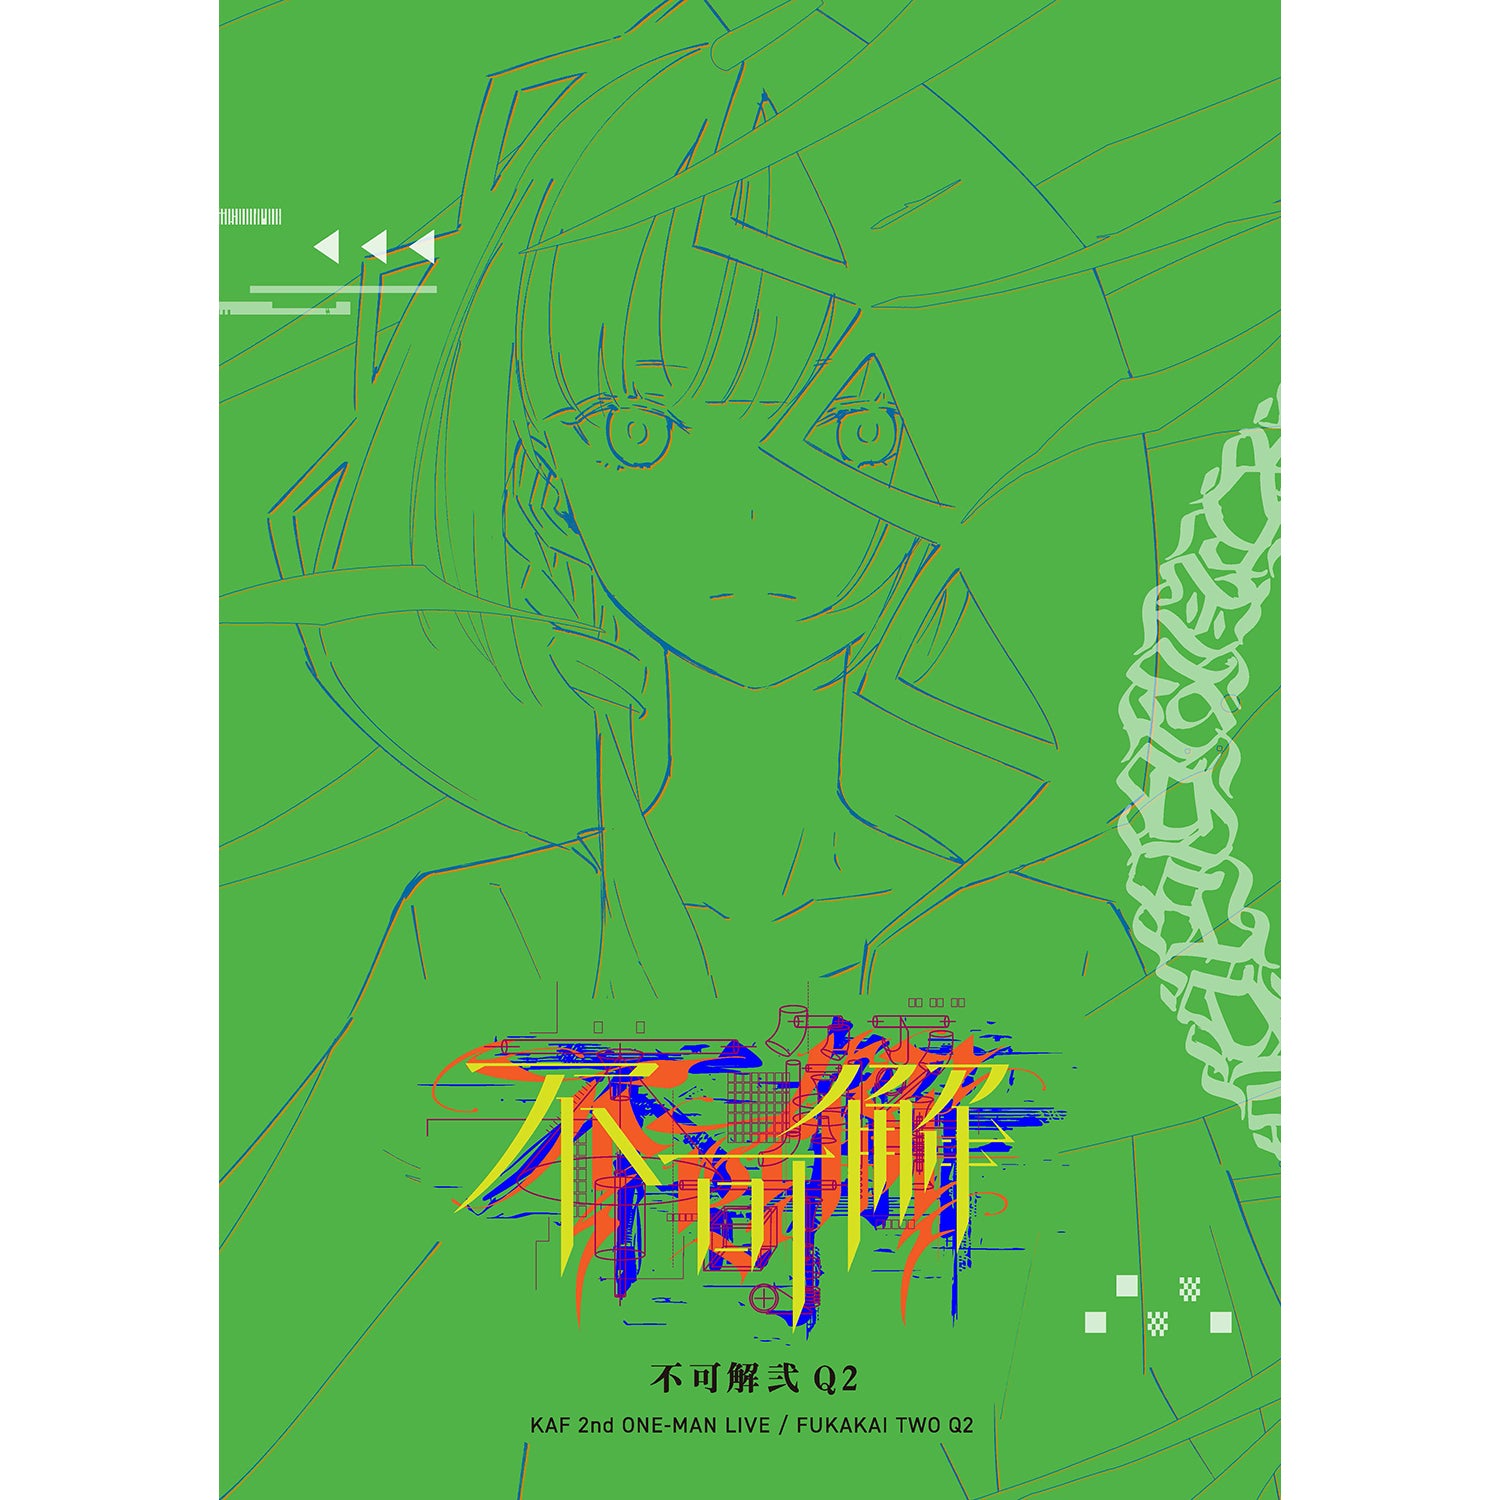 花譜】「不可解弐Q2」ライブパンフレット／2nd ONE-MAN LIVE「不可解弐